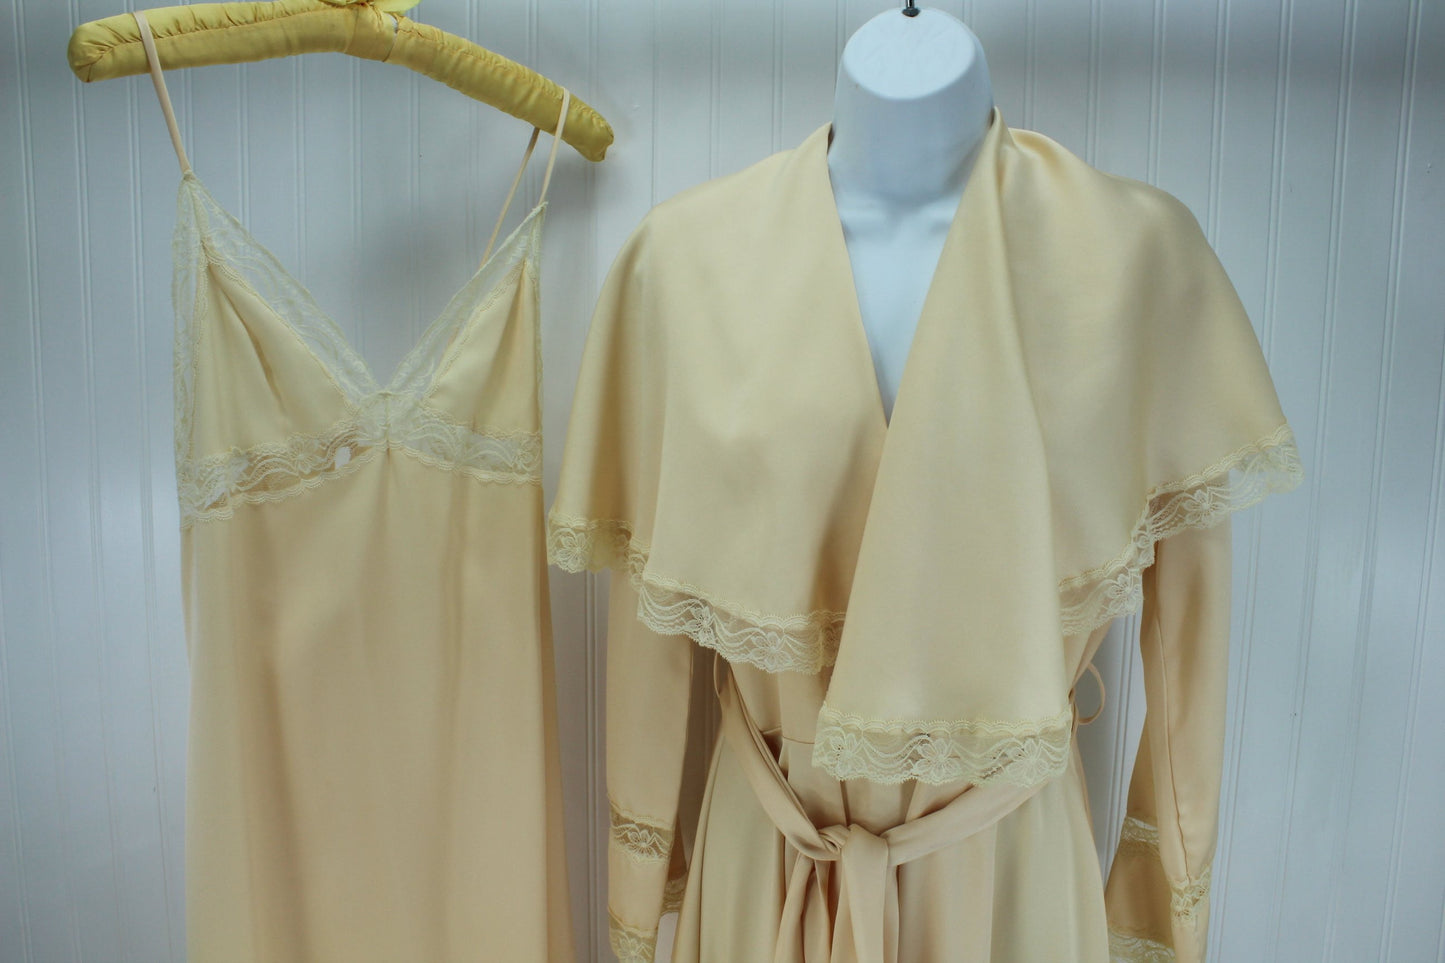 QUINTANNA Gown Peignoir Set  Nude Matching Lace Exquisite Trousseau Size M wedding